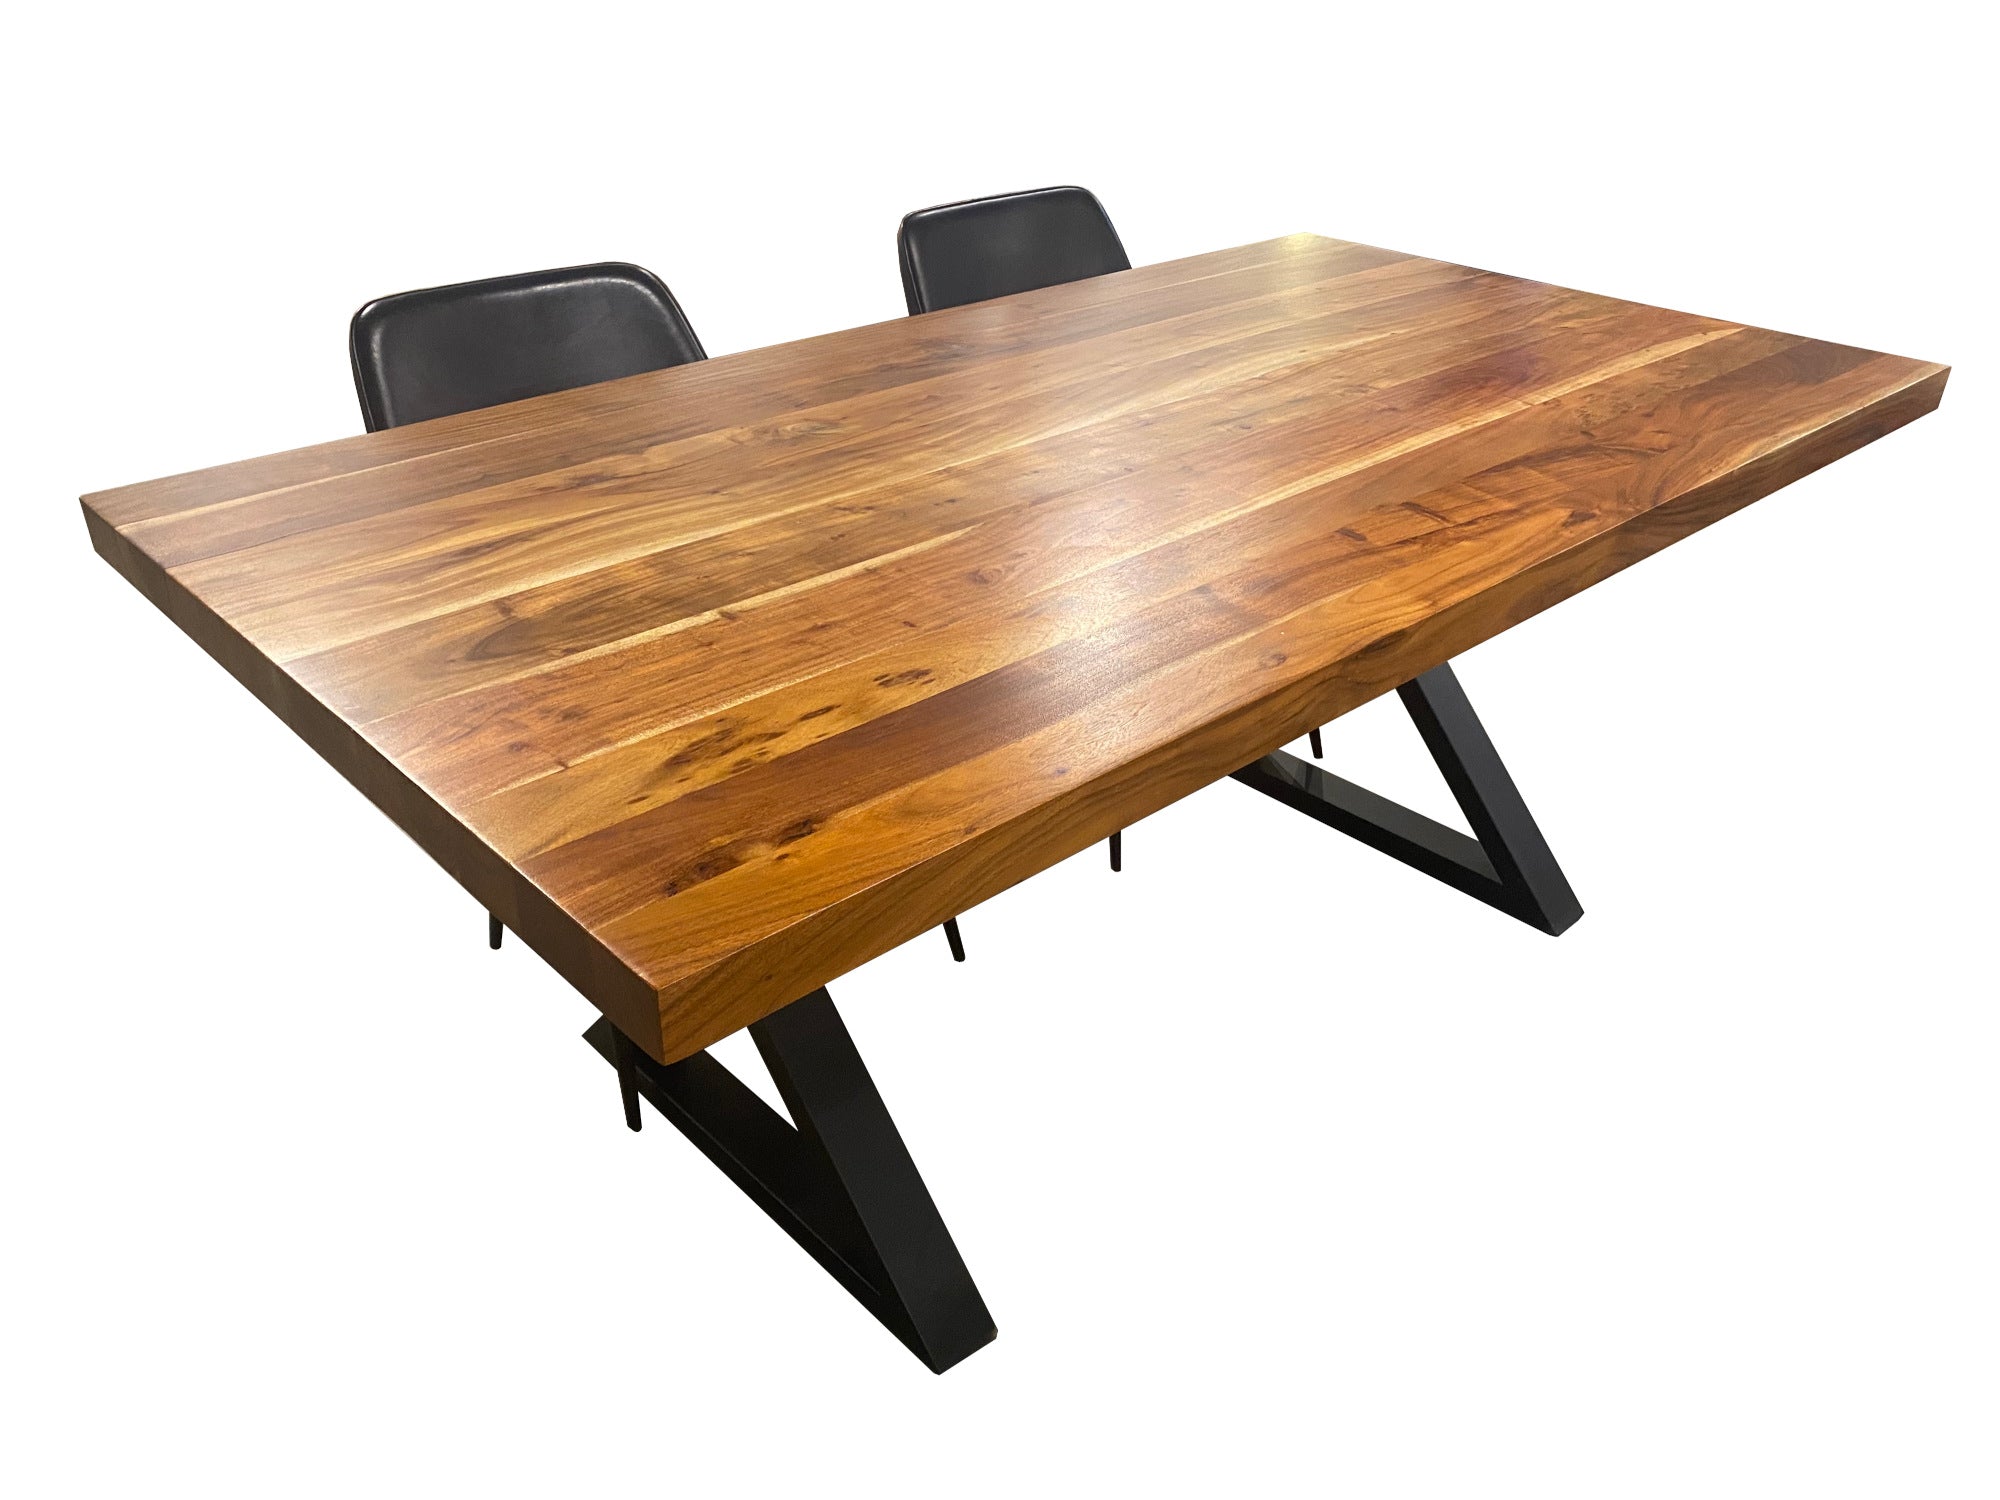 Table d'appoint tronc d'arbre acacia canada Couleur bois naturel